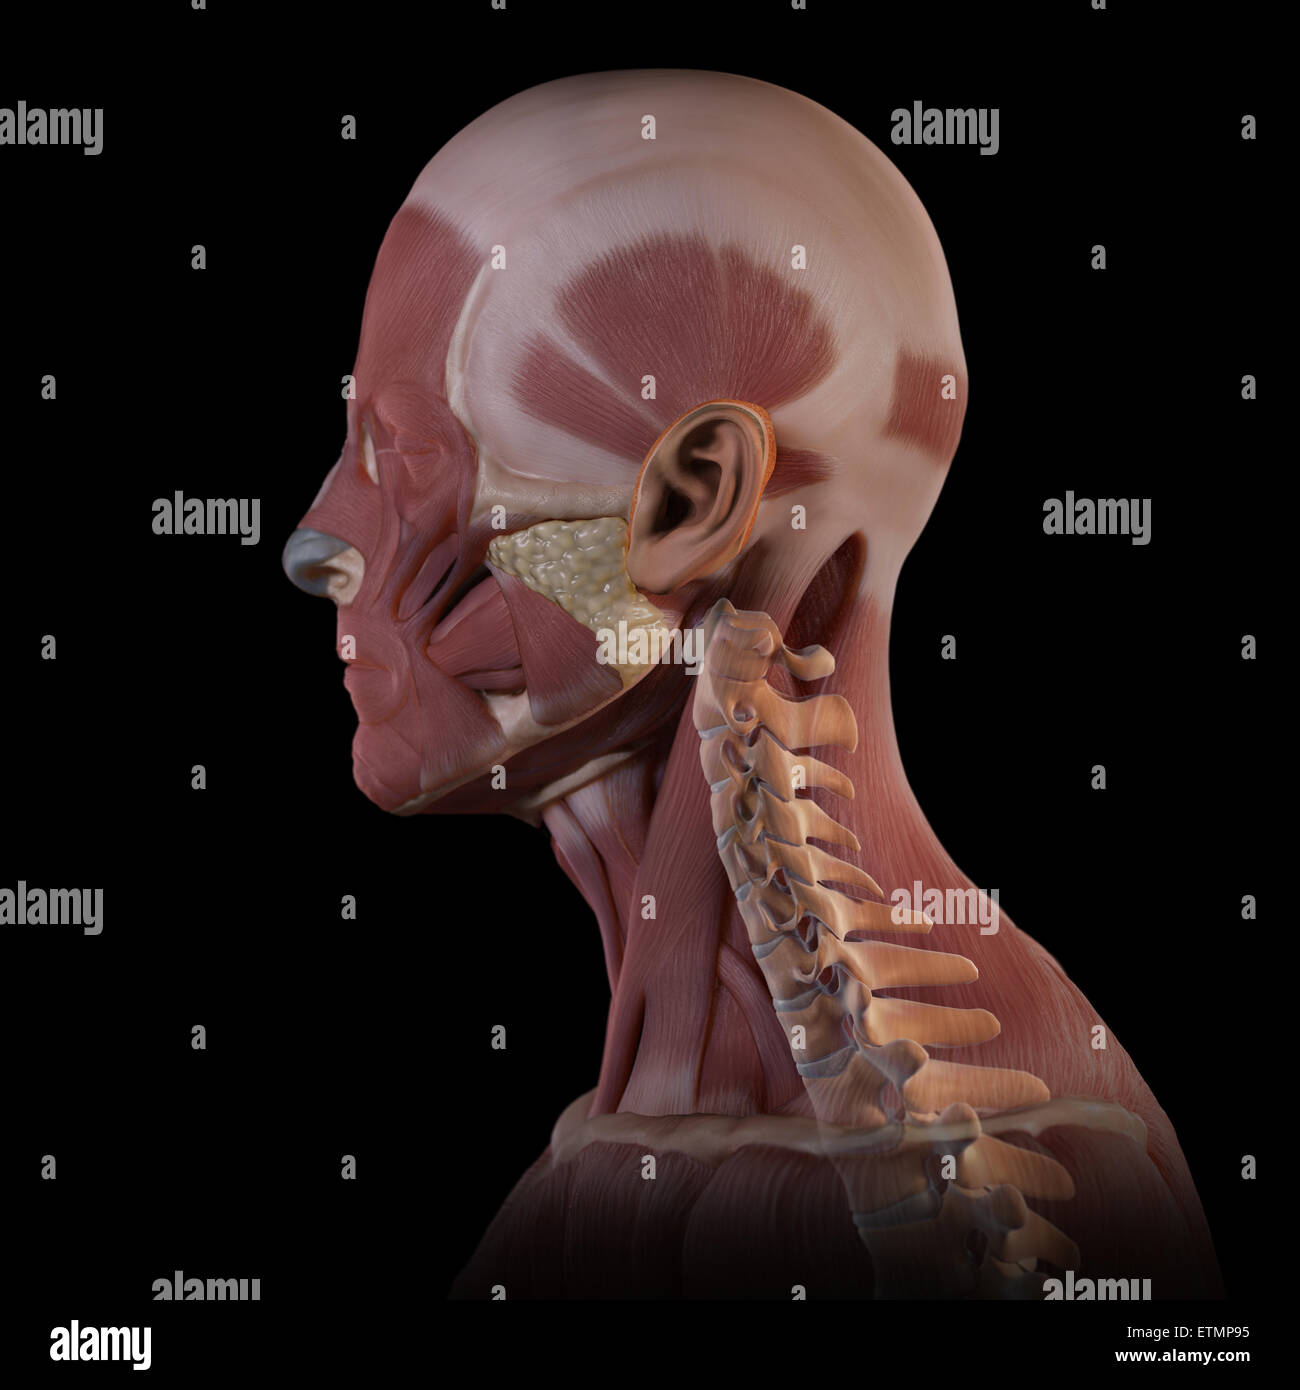 Imagen conceptual de los músculos de la cara con las vértebras cervicales visibles. Foto de stock